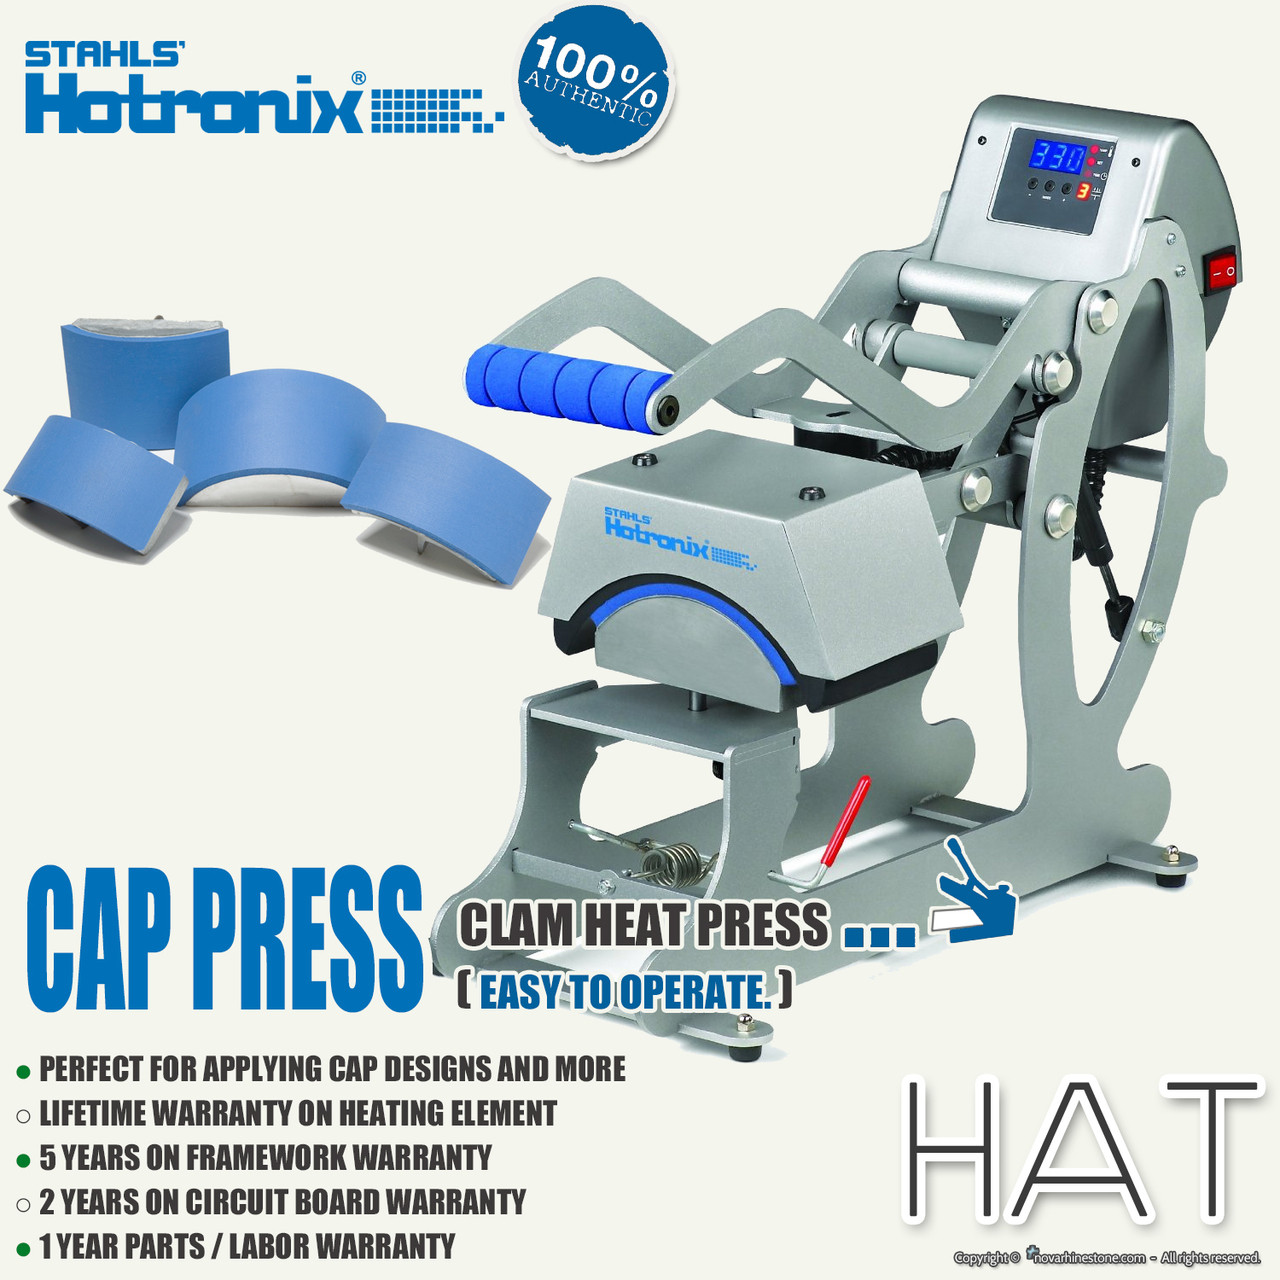 Hotronix Auto Cap Heat Press